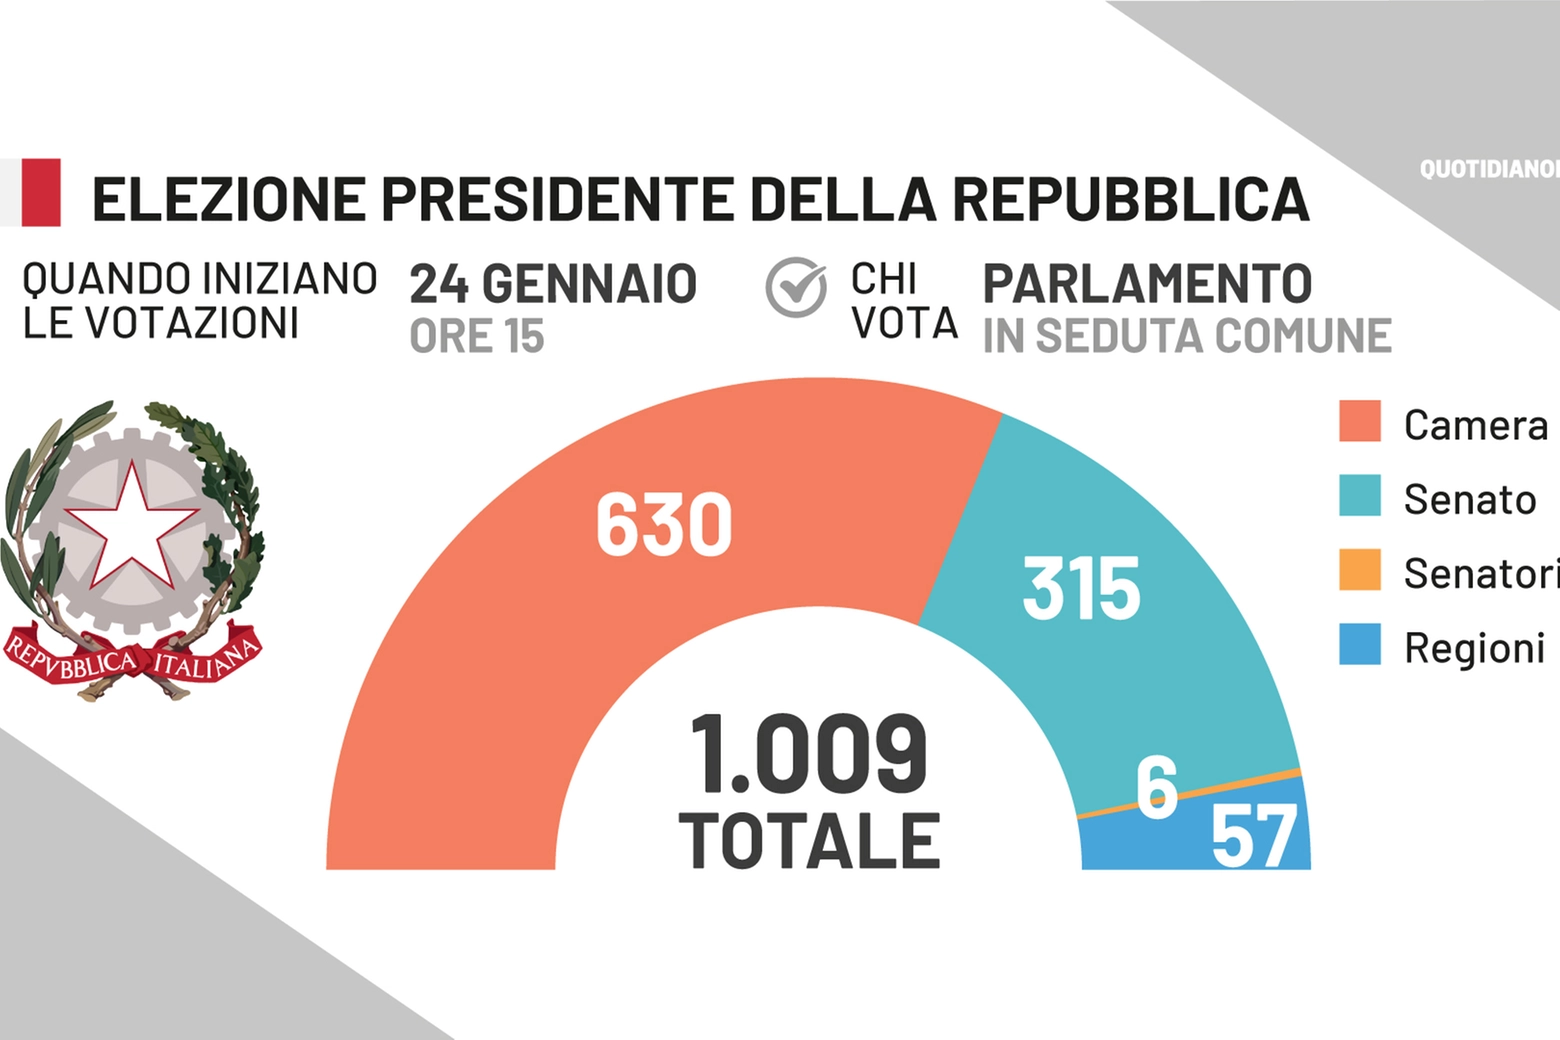 Presidente della Repubblica: chi vota. I numeri 